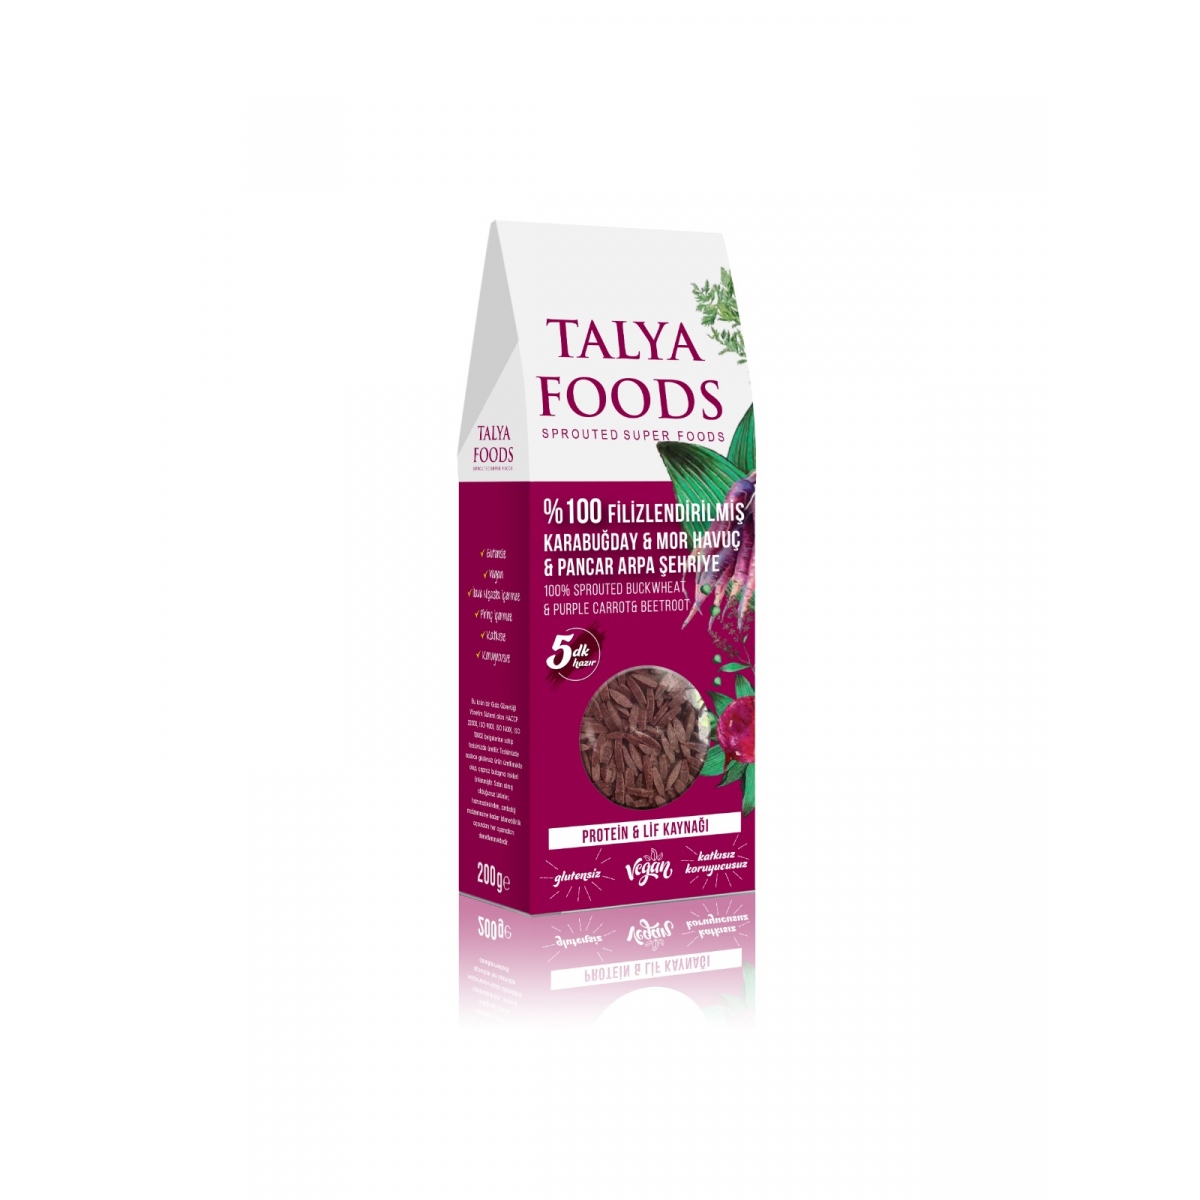 Talya Foods Filizlendirilmiş Çiğ Karabuğday Pancar ve Mor Havuç Şehriye 200 G